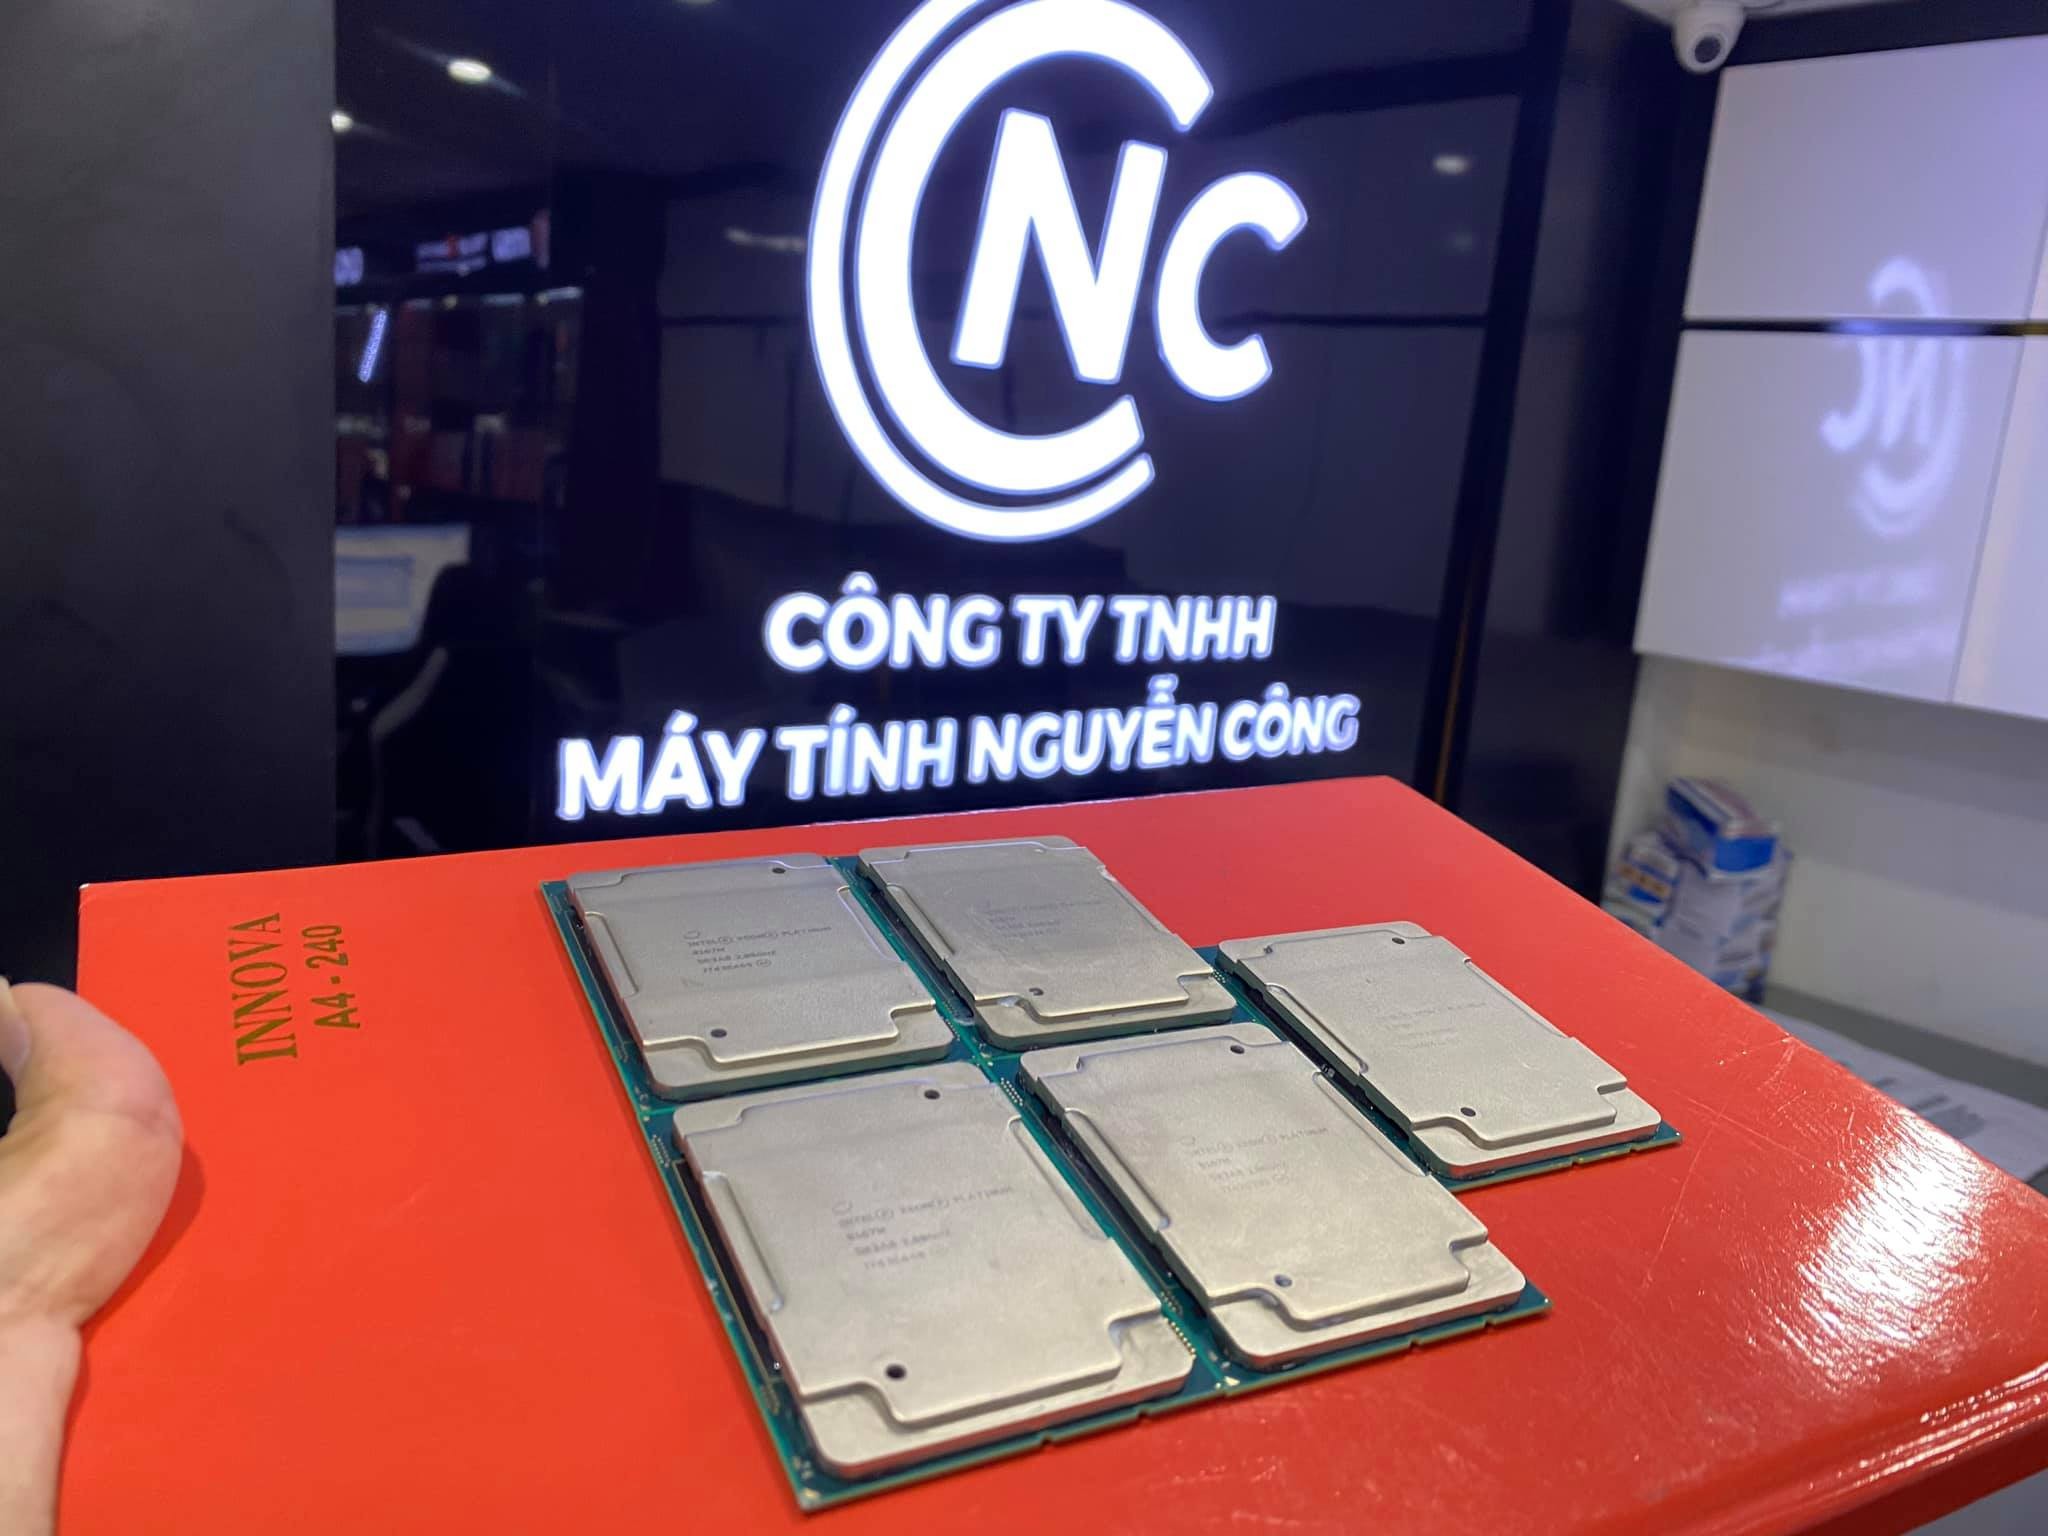 CPU Intel Xeon Platinum 8175M